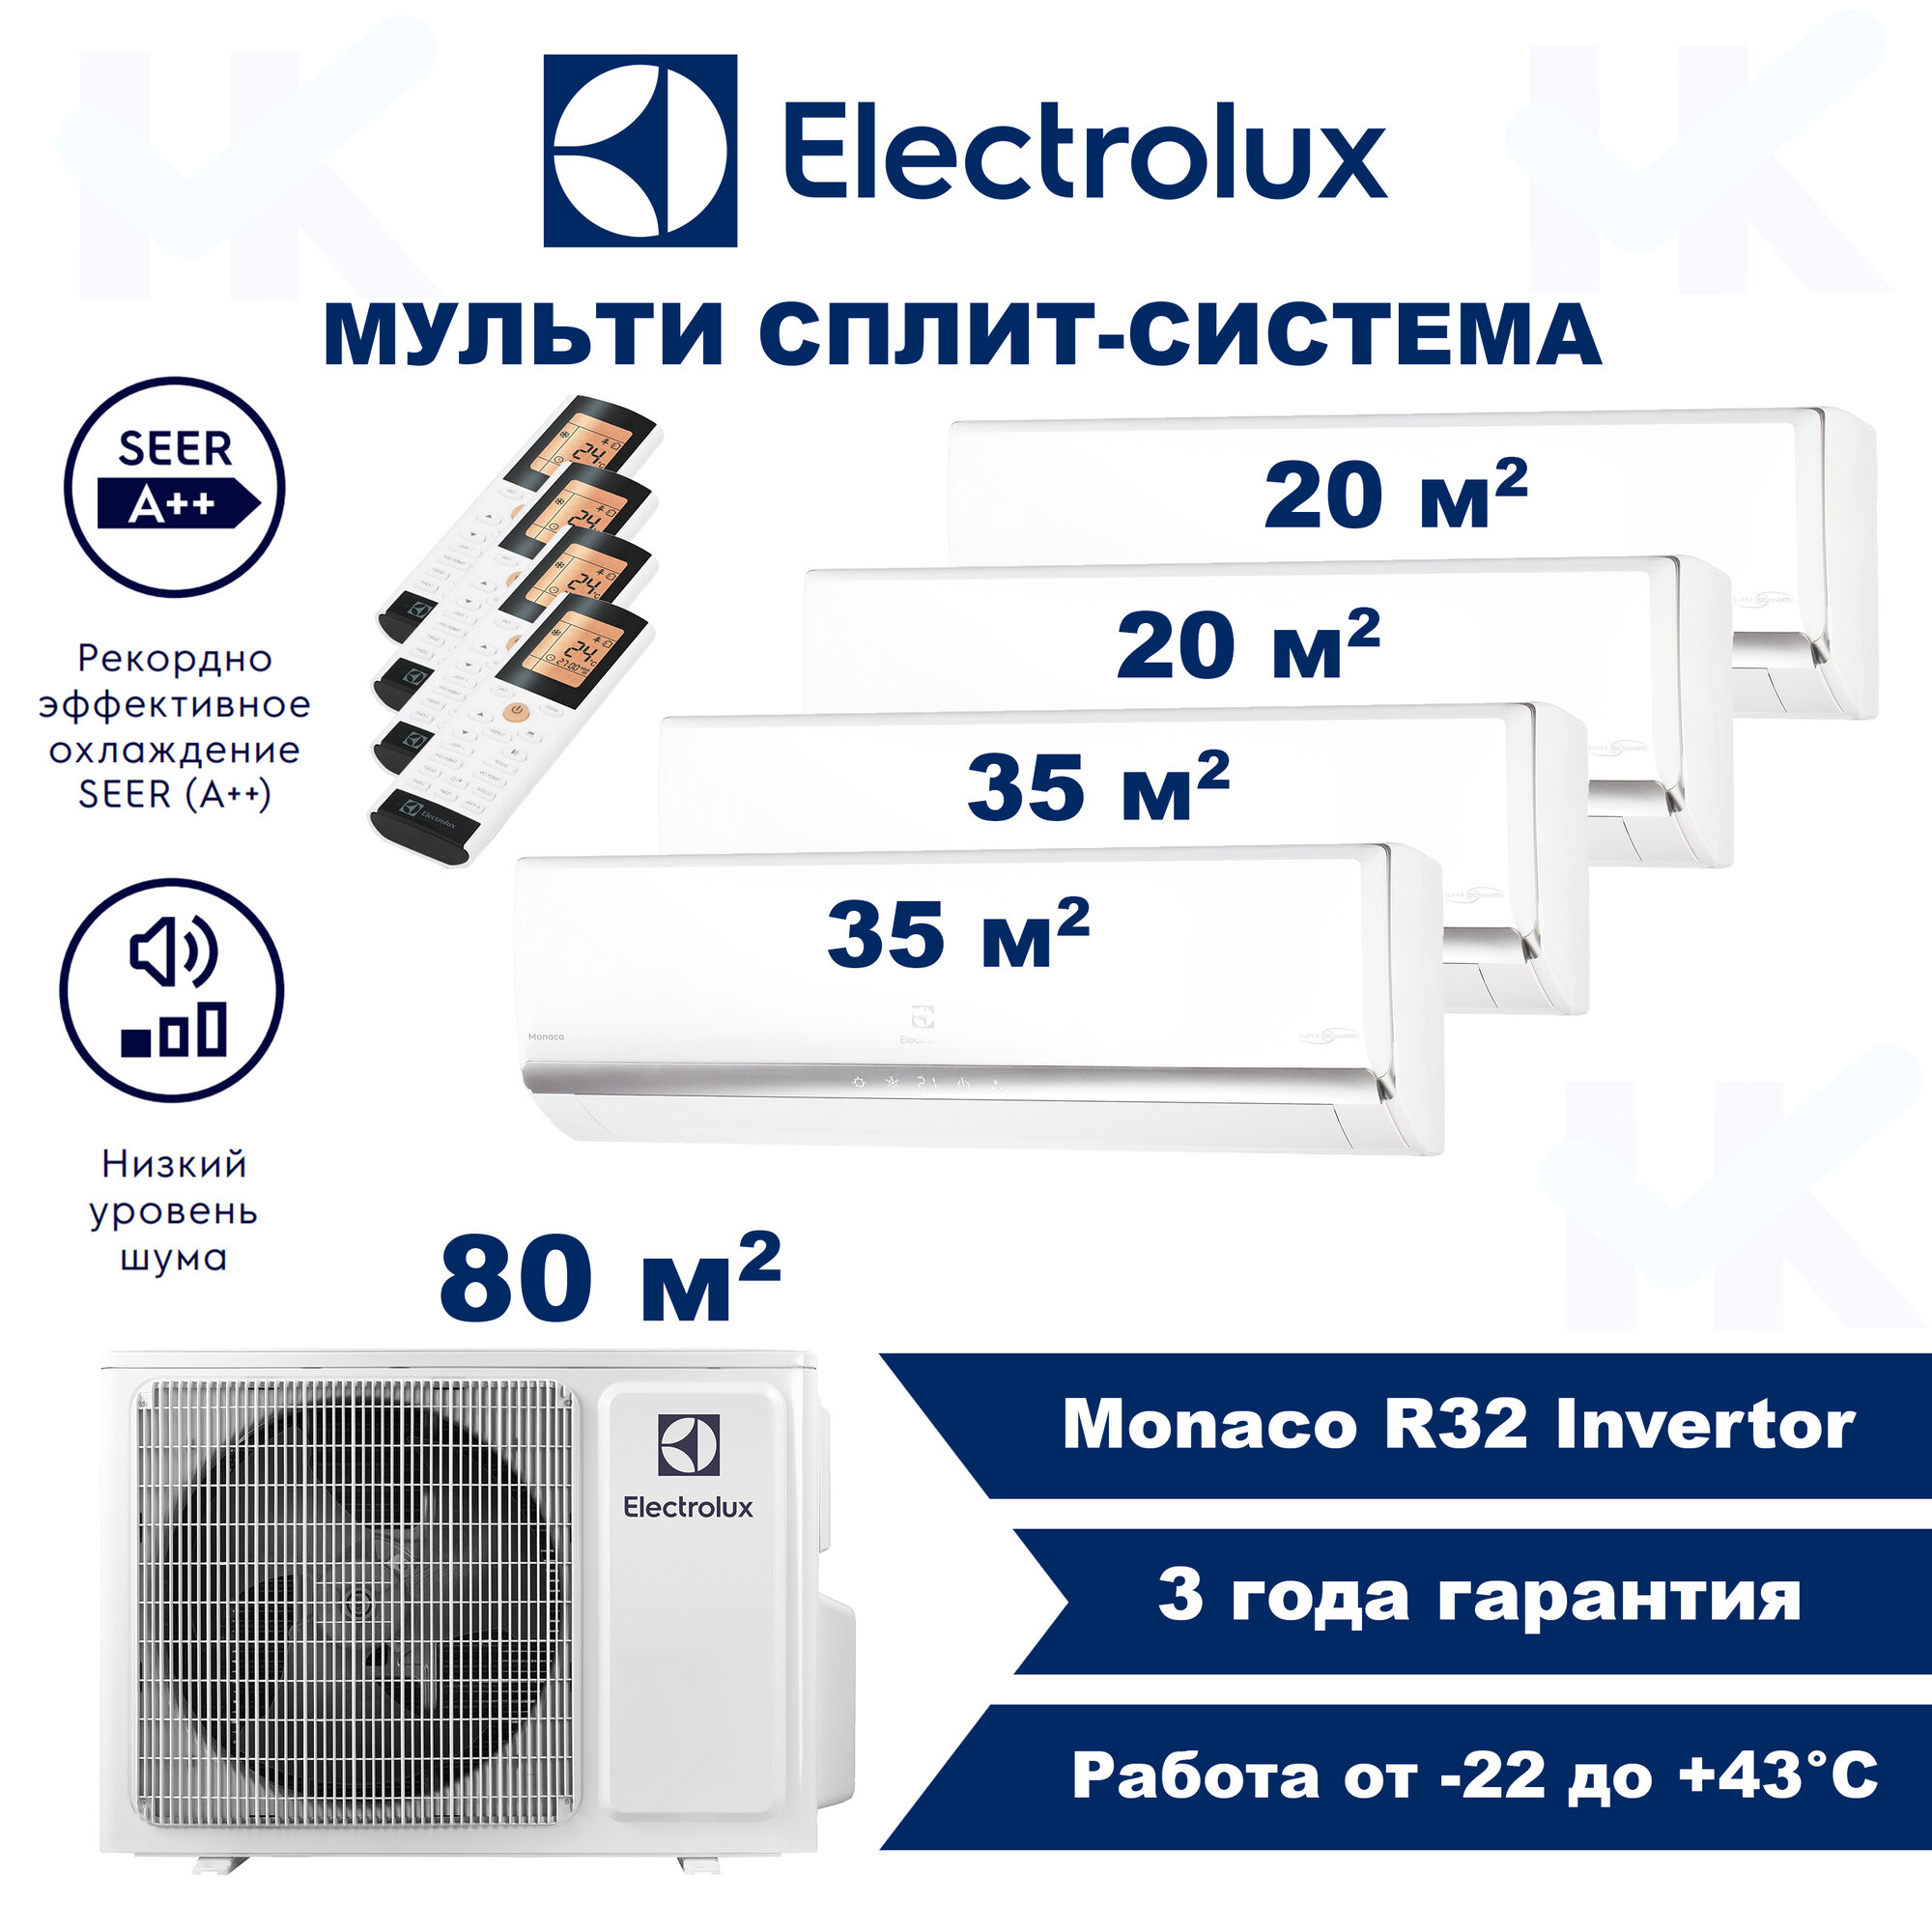 Инверторная мульти сплит-система ELECTROLUX серии Monaco на 4 комнаты (20 м2 + 20 м2 + 35 м2 + 35 м2) с наружным блоком 80 м2 Попеременная работа